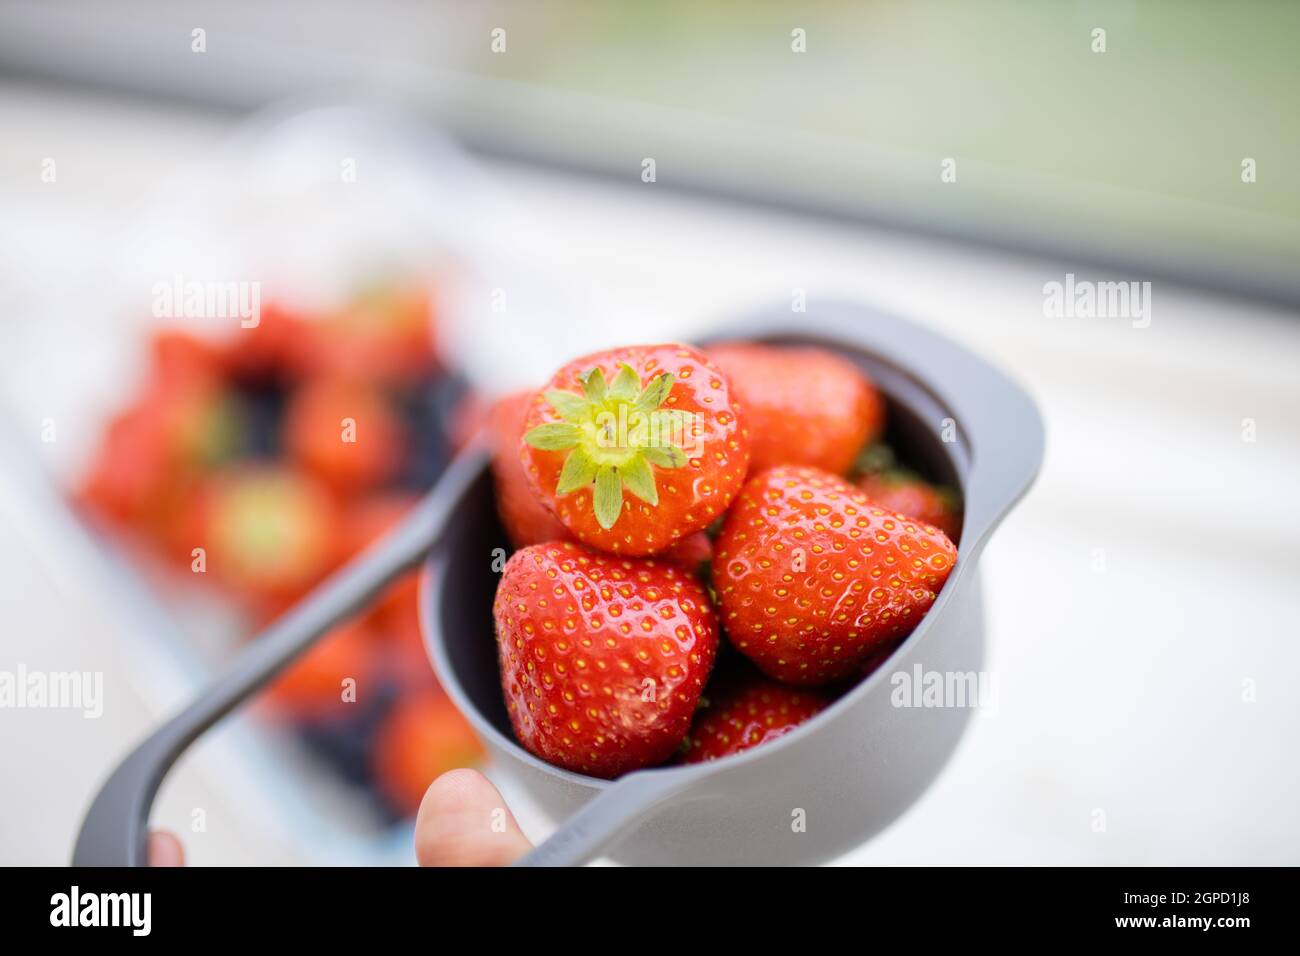 Petite tasse graduée pleine de fraises juteuses au-dessus de fruits plus flous. Baies fraîches et floues dans des récipients en plastique. Préparation de desserts fruités Banque D'Images